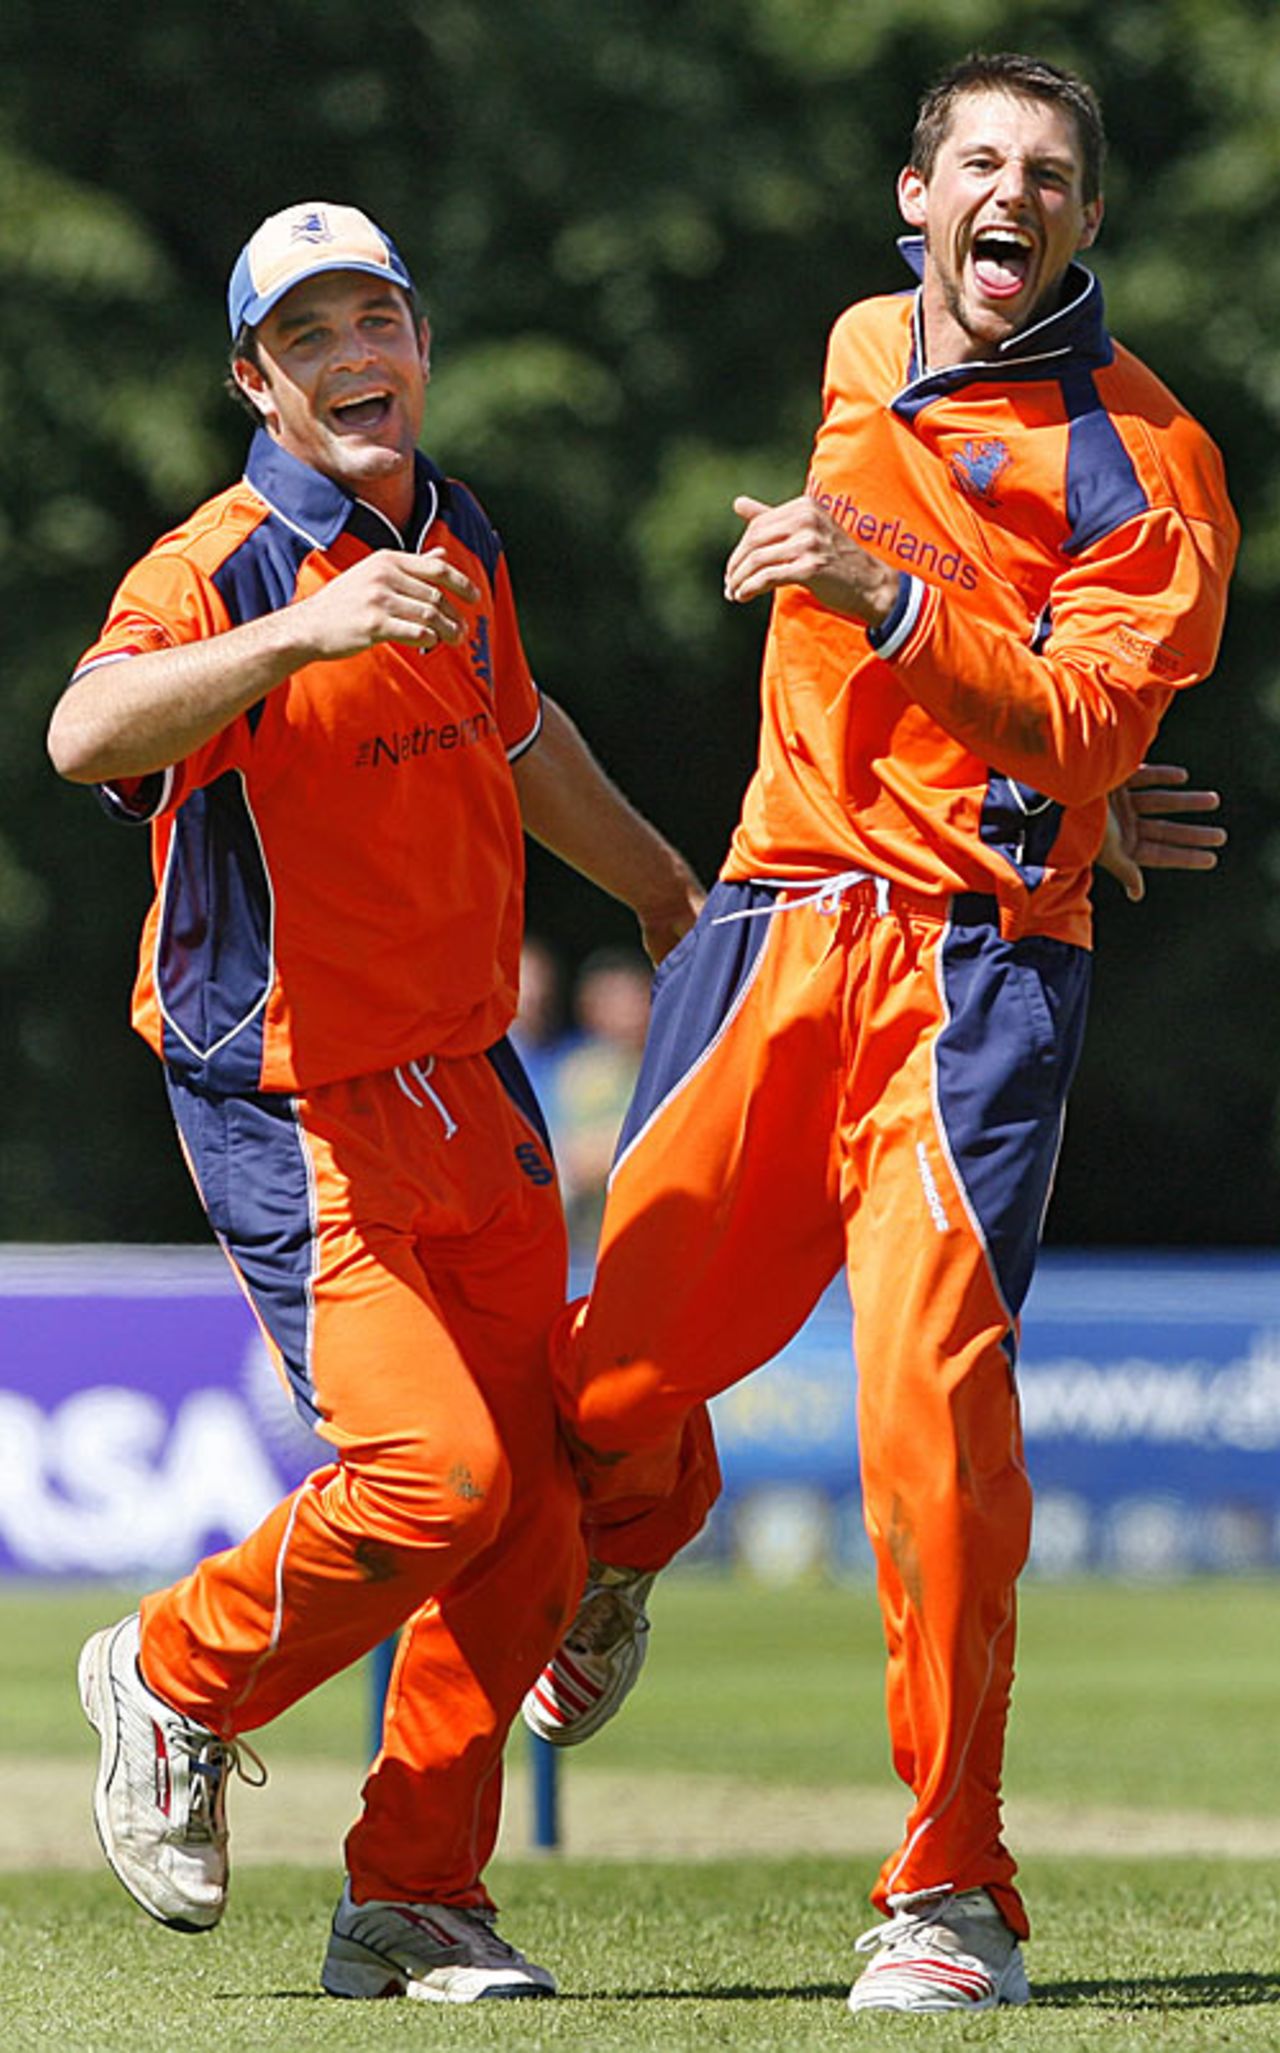 Peter Borren and Pieter Seelaar celebrate another wicket during Netherlands' victory over Kenya, Kenya v Netherlands, ICC World Twenty20 Qualifier, Belfast, August 2, 2008